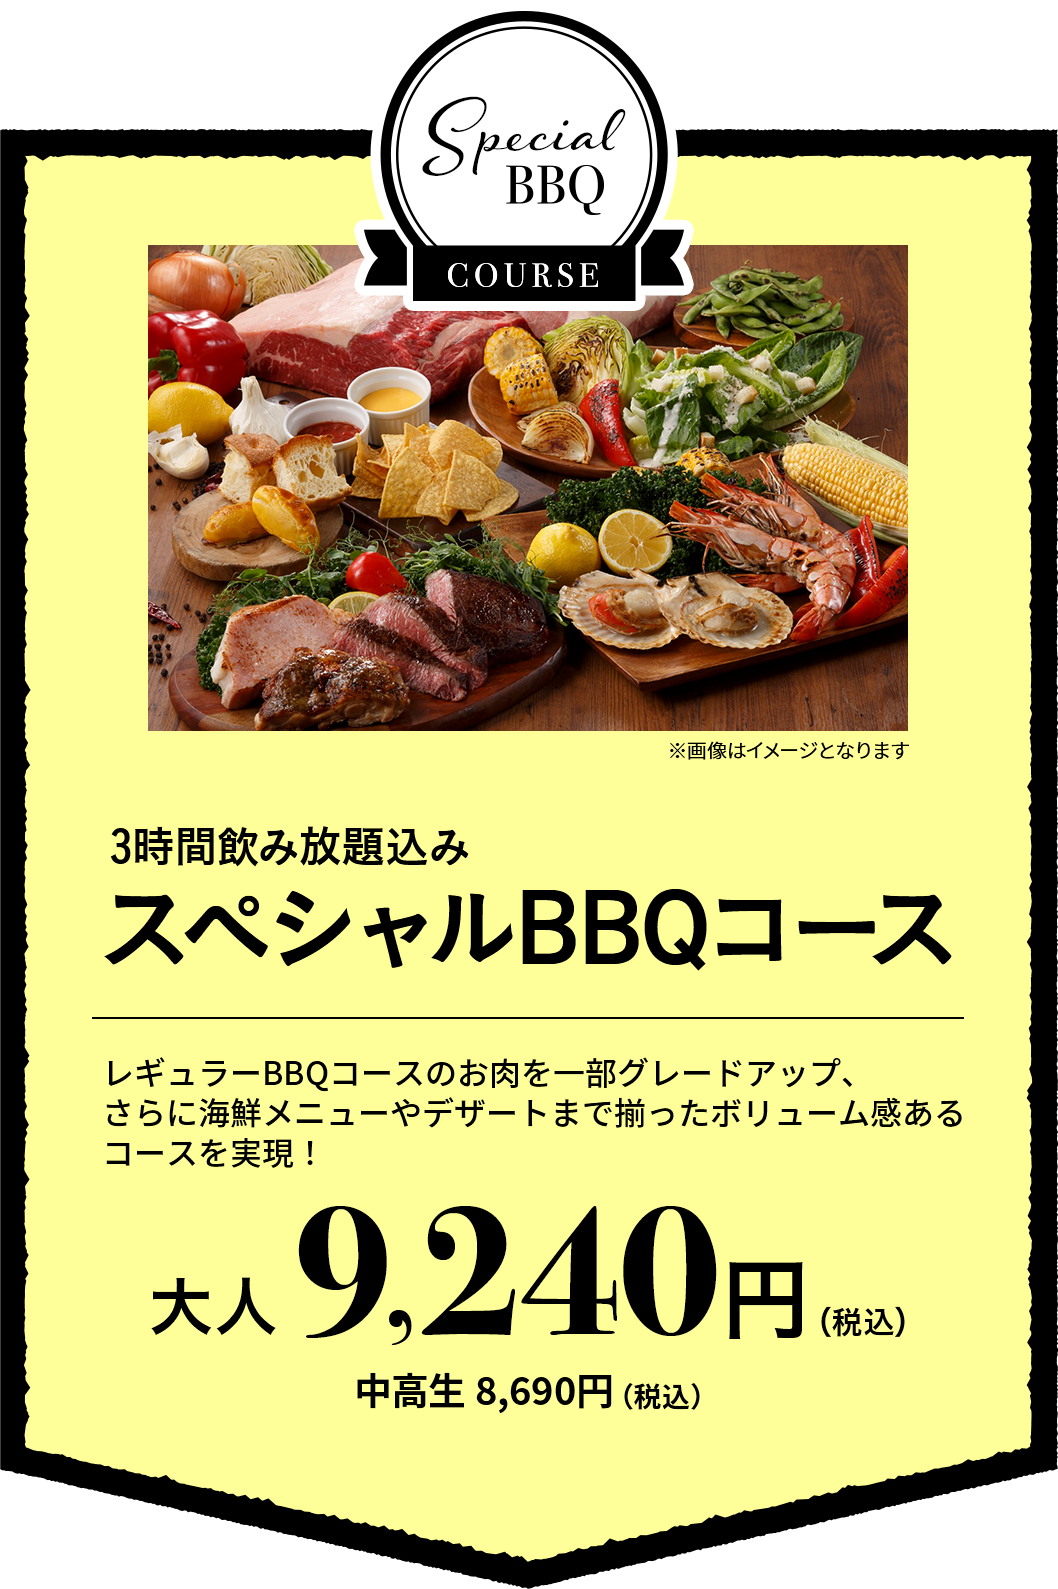 无限畅饮3小时的包含的特别的BBQ套餐大人9,240日元(含税)中学生8,690日元(含税)